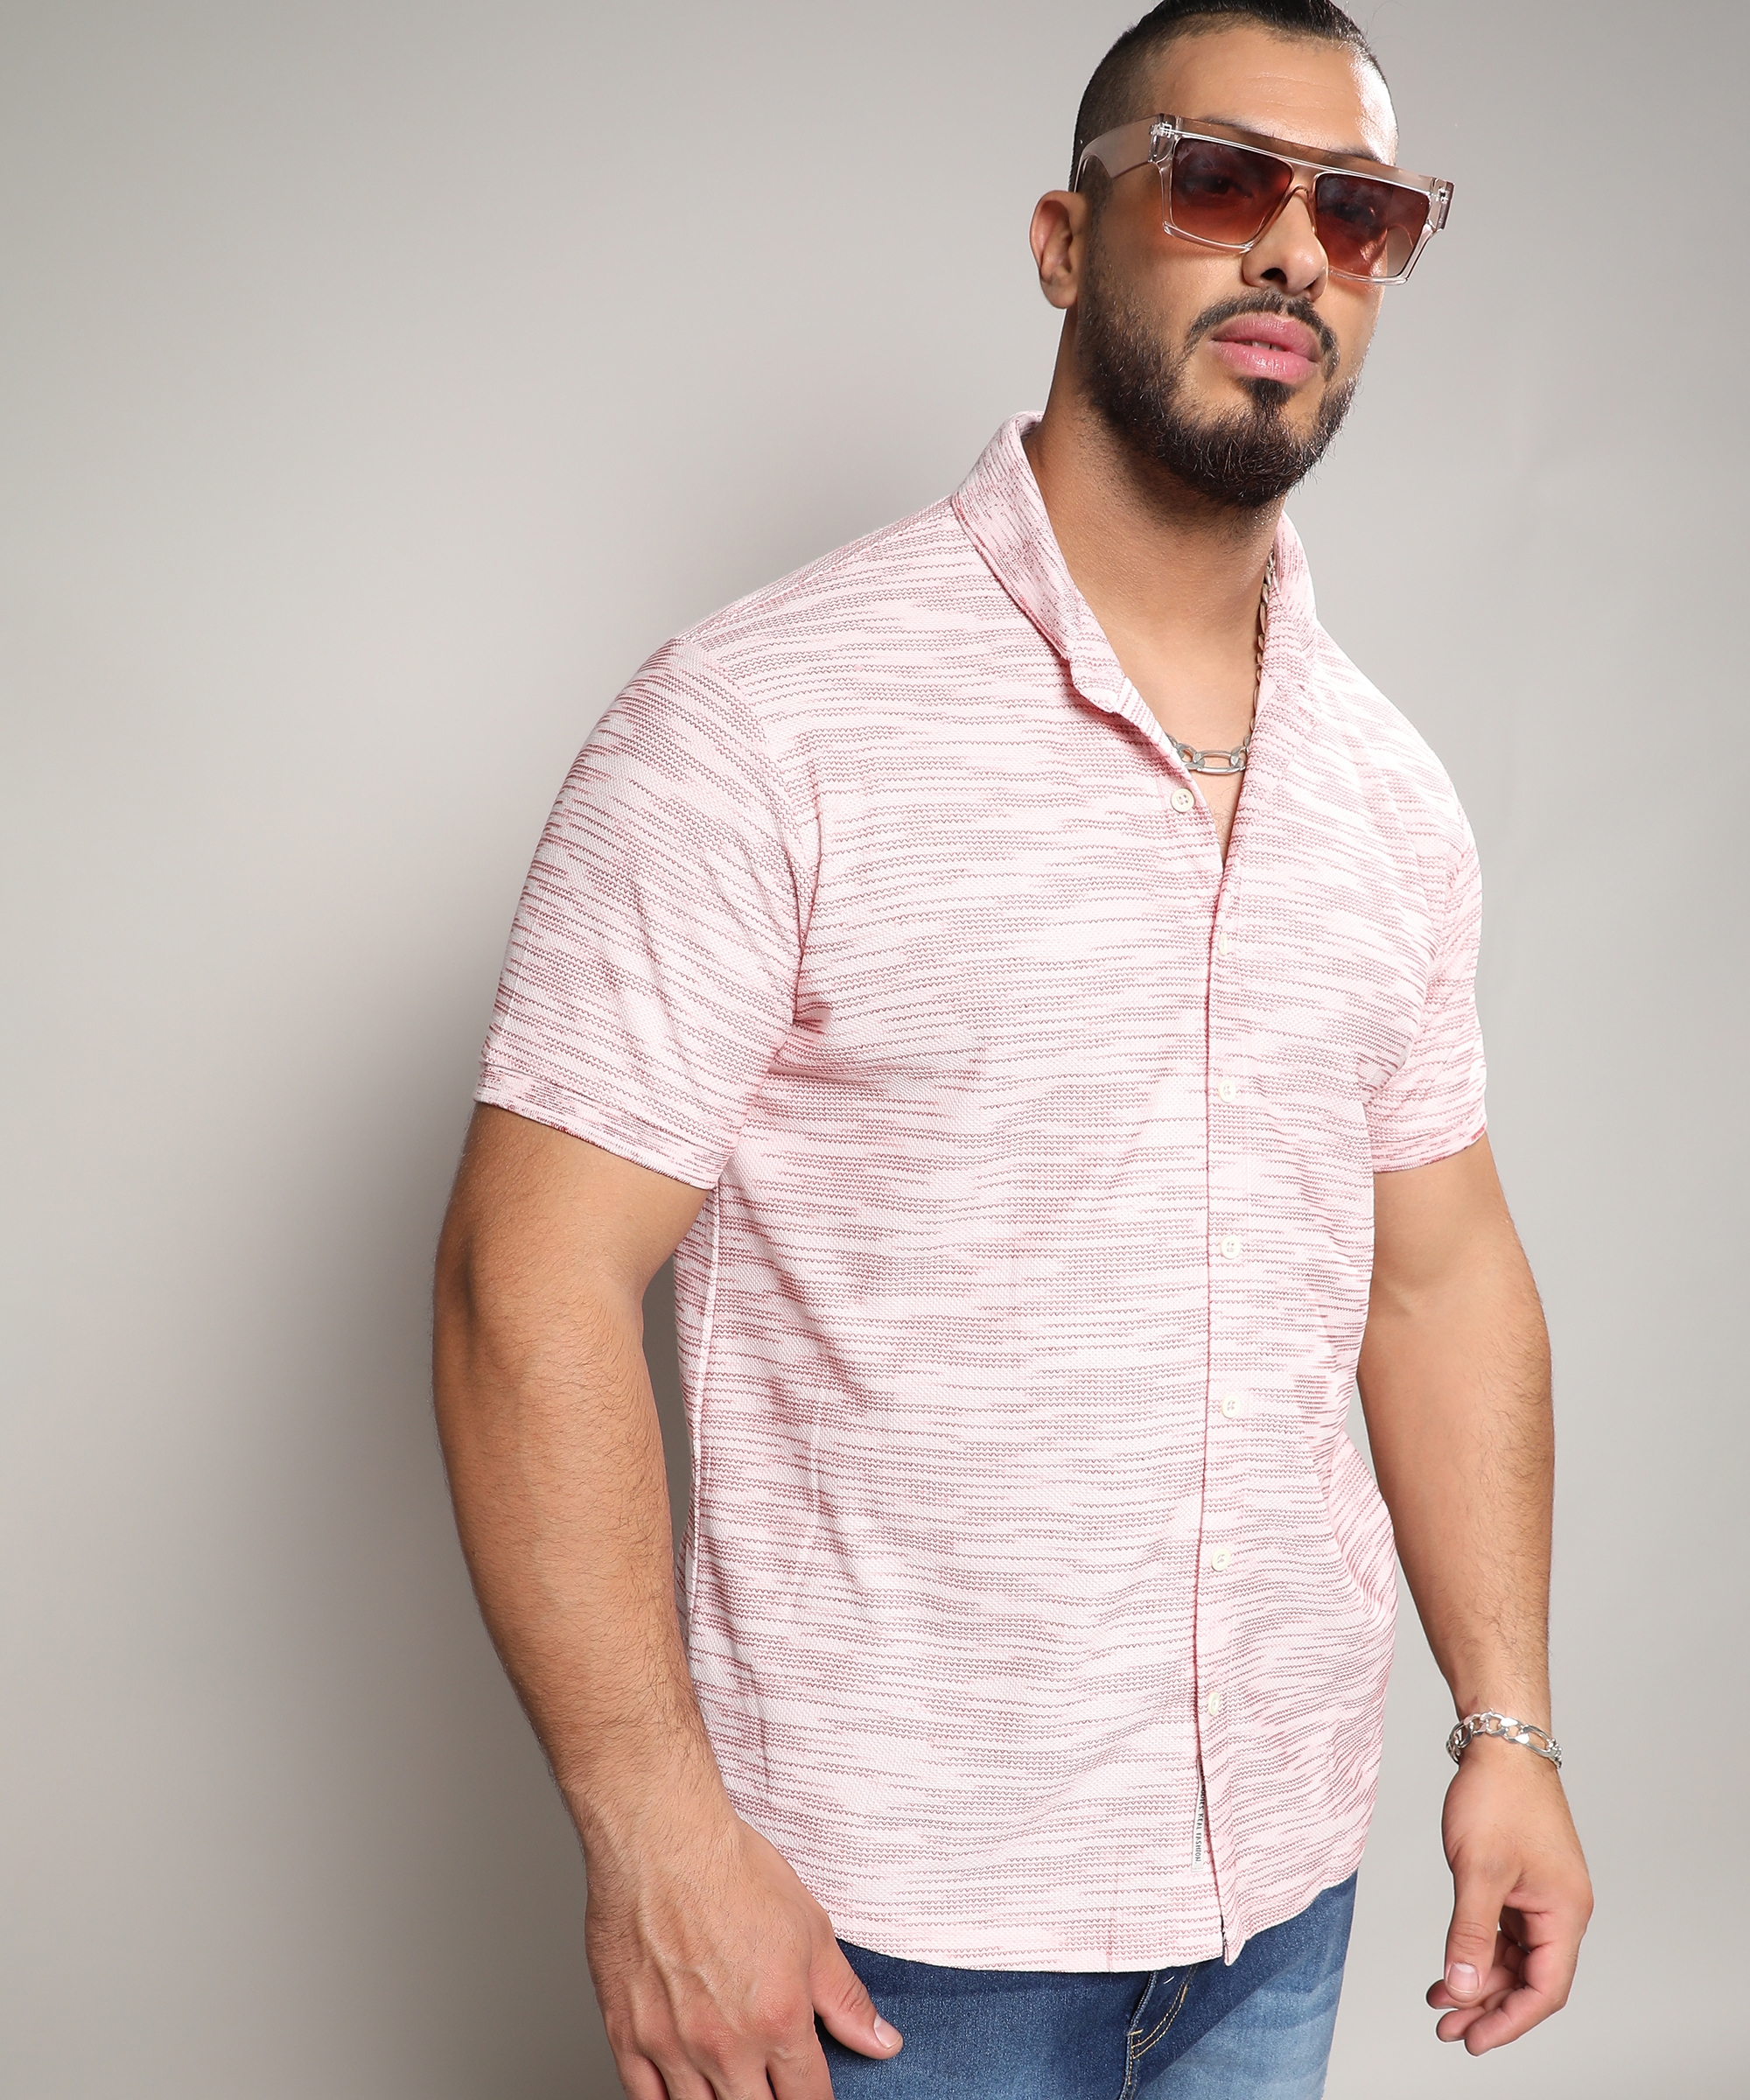 Men's Blush Pink Textured Horizontal Striped Shirt